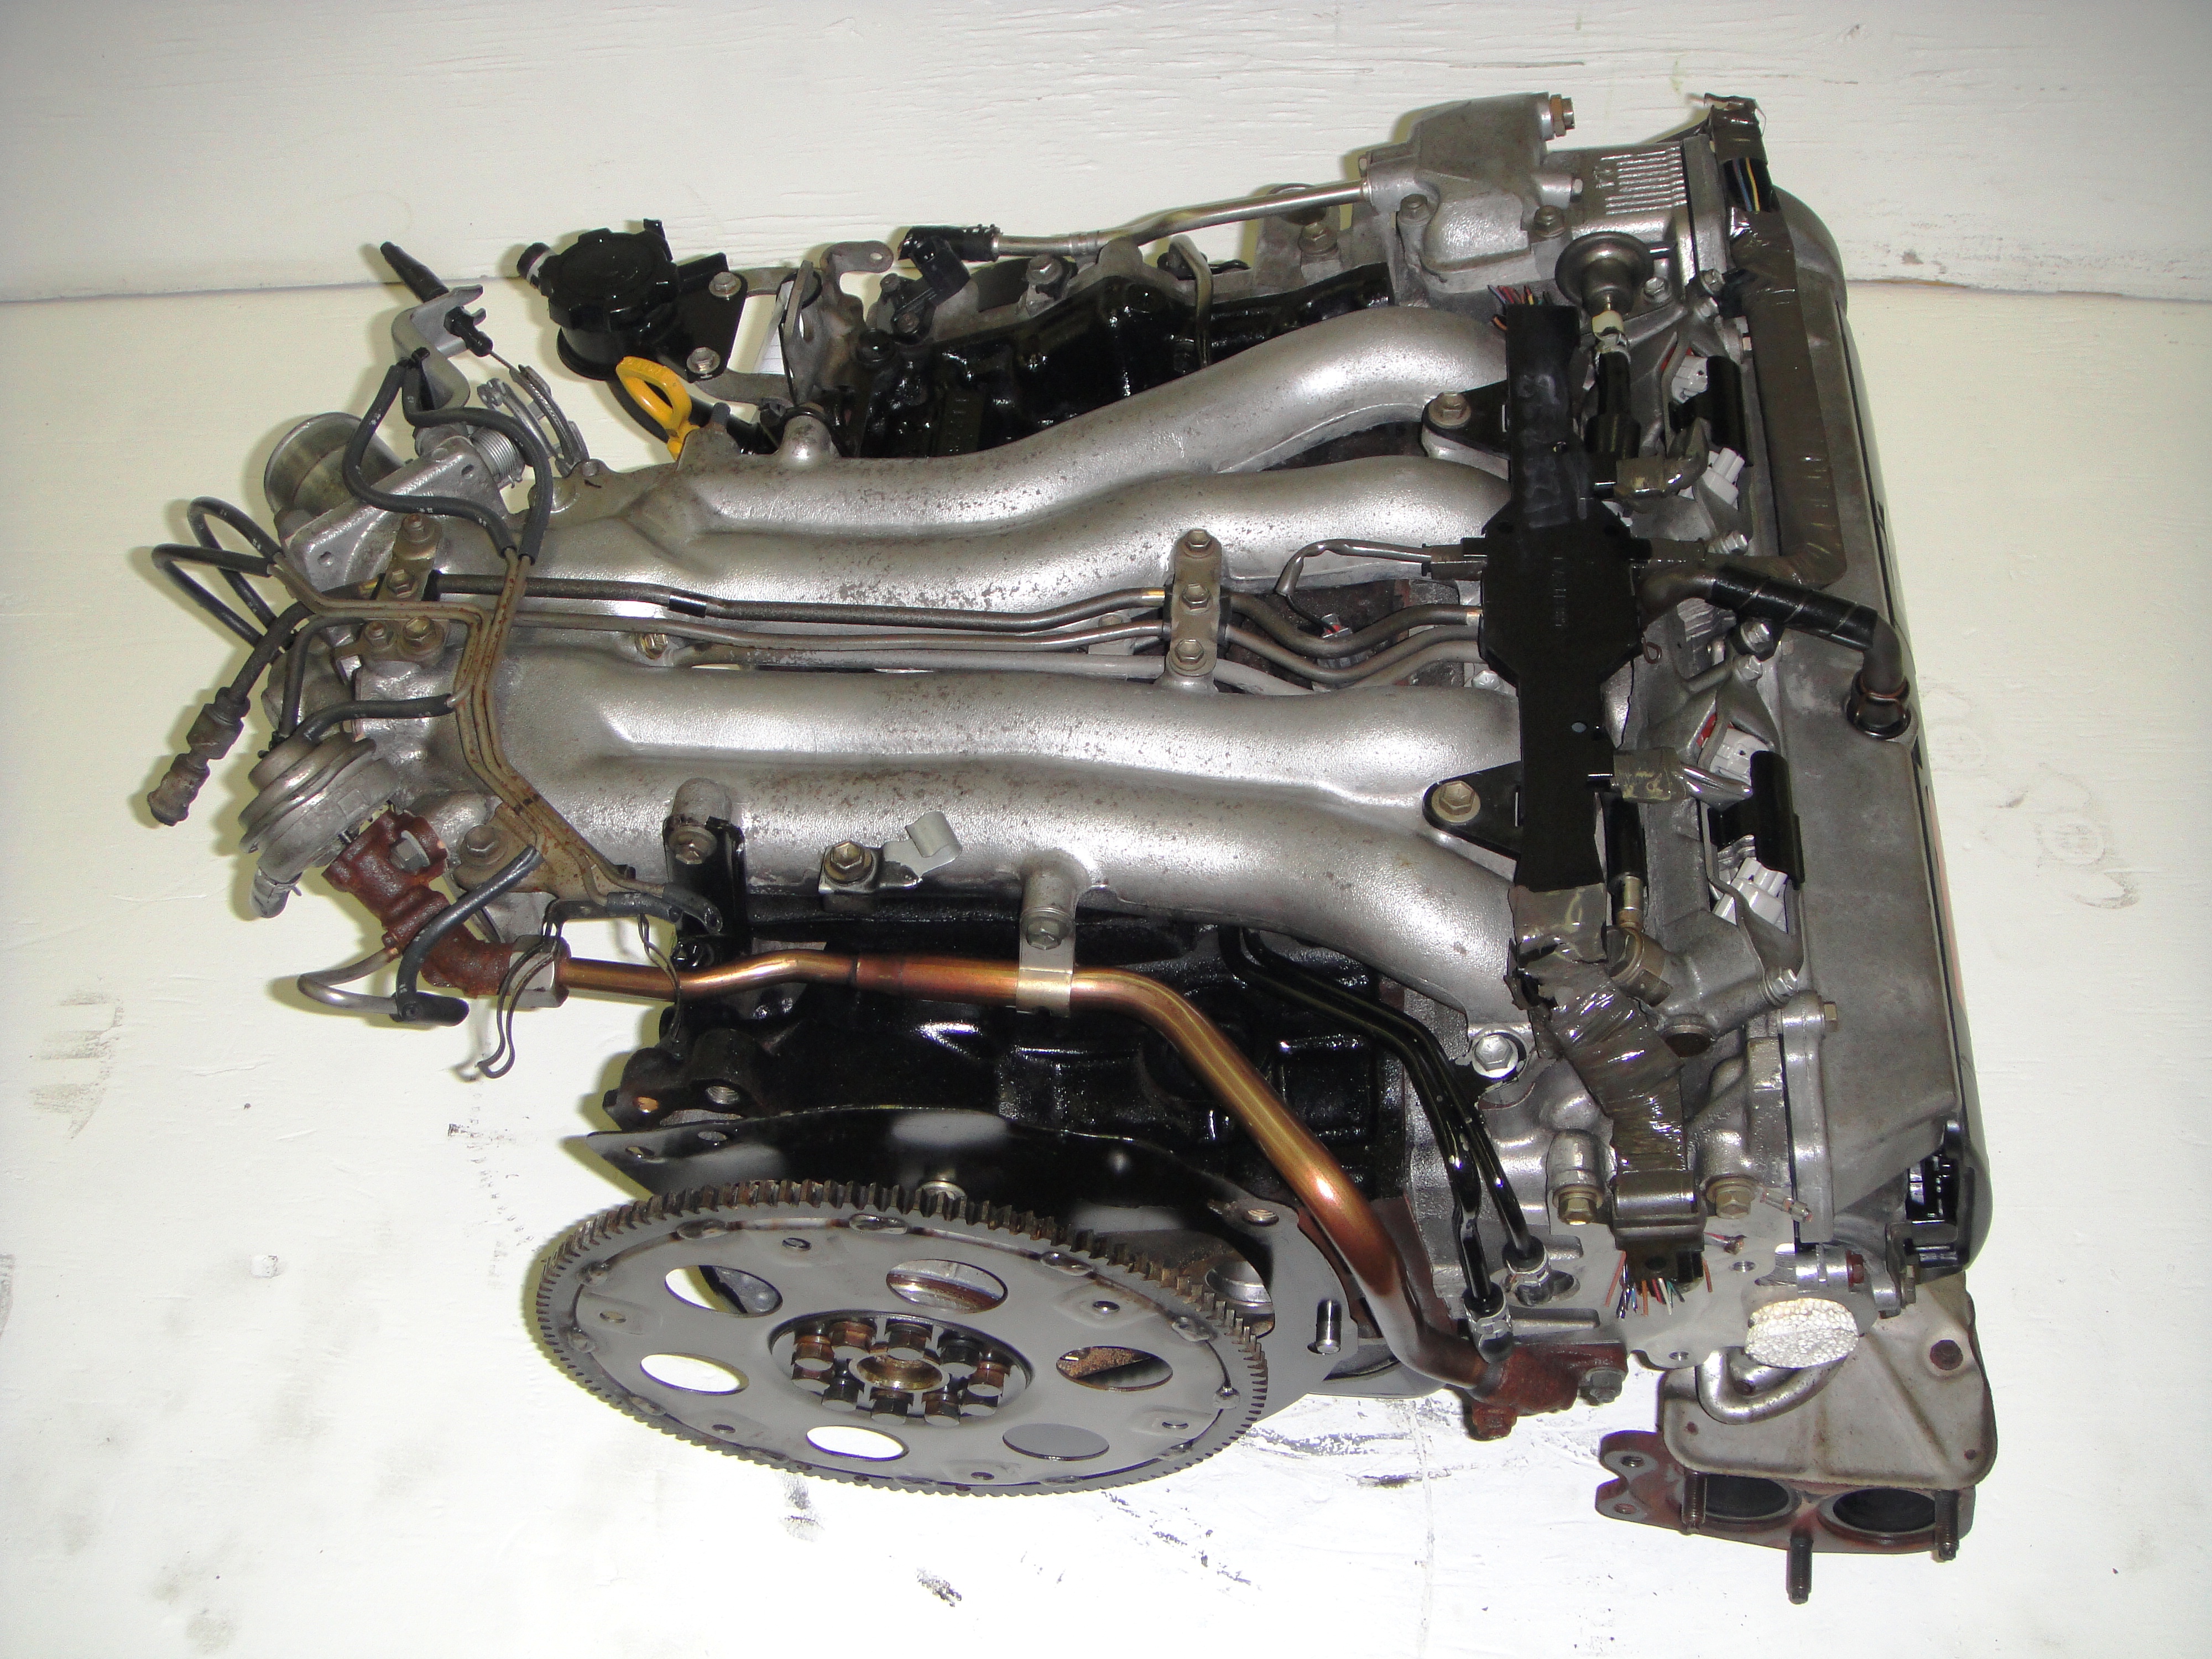 Toyota previa engine removal